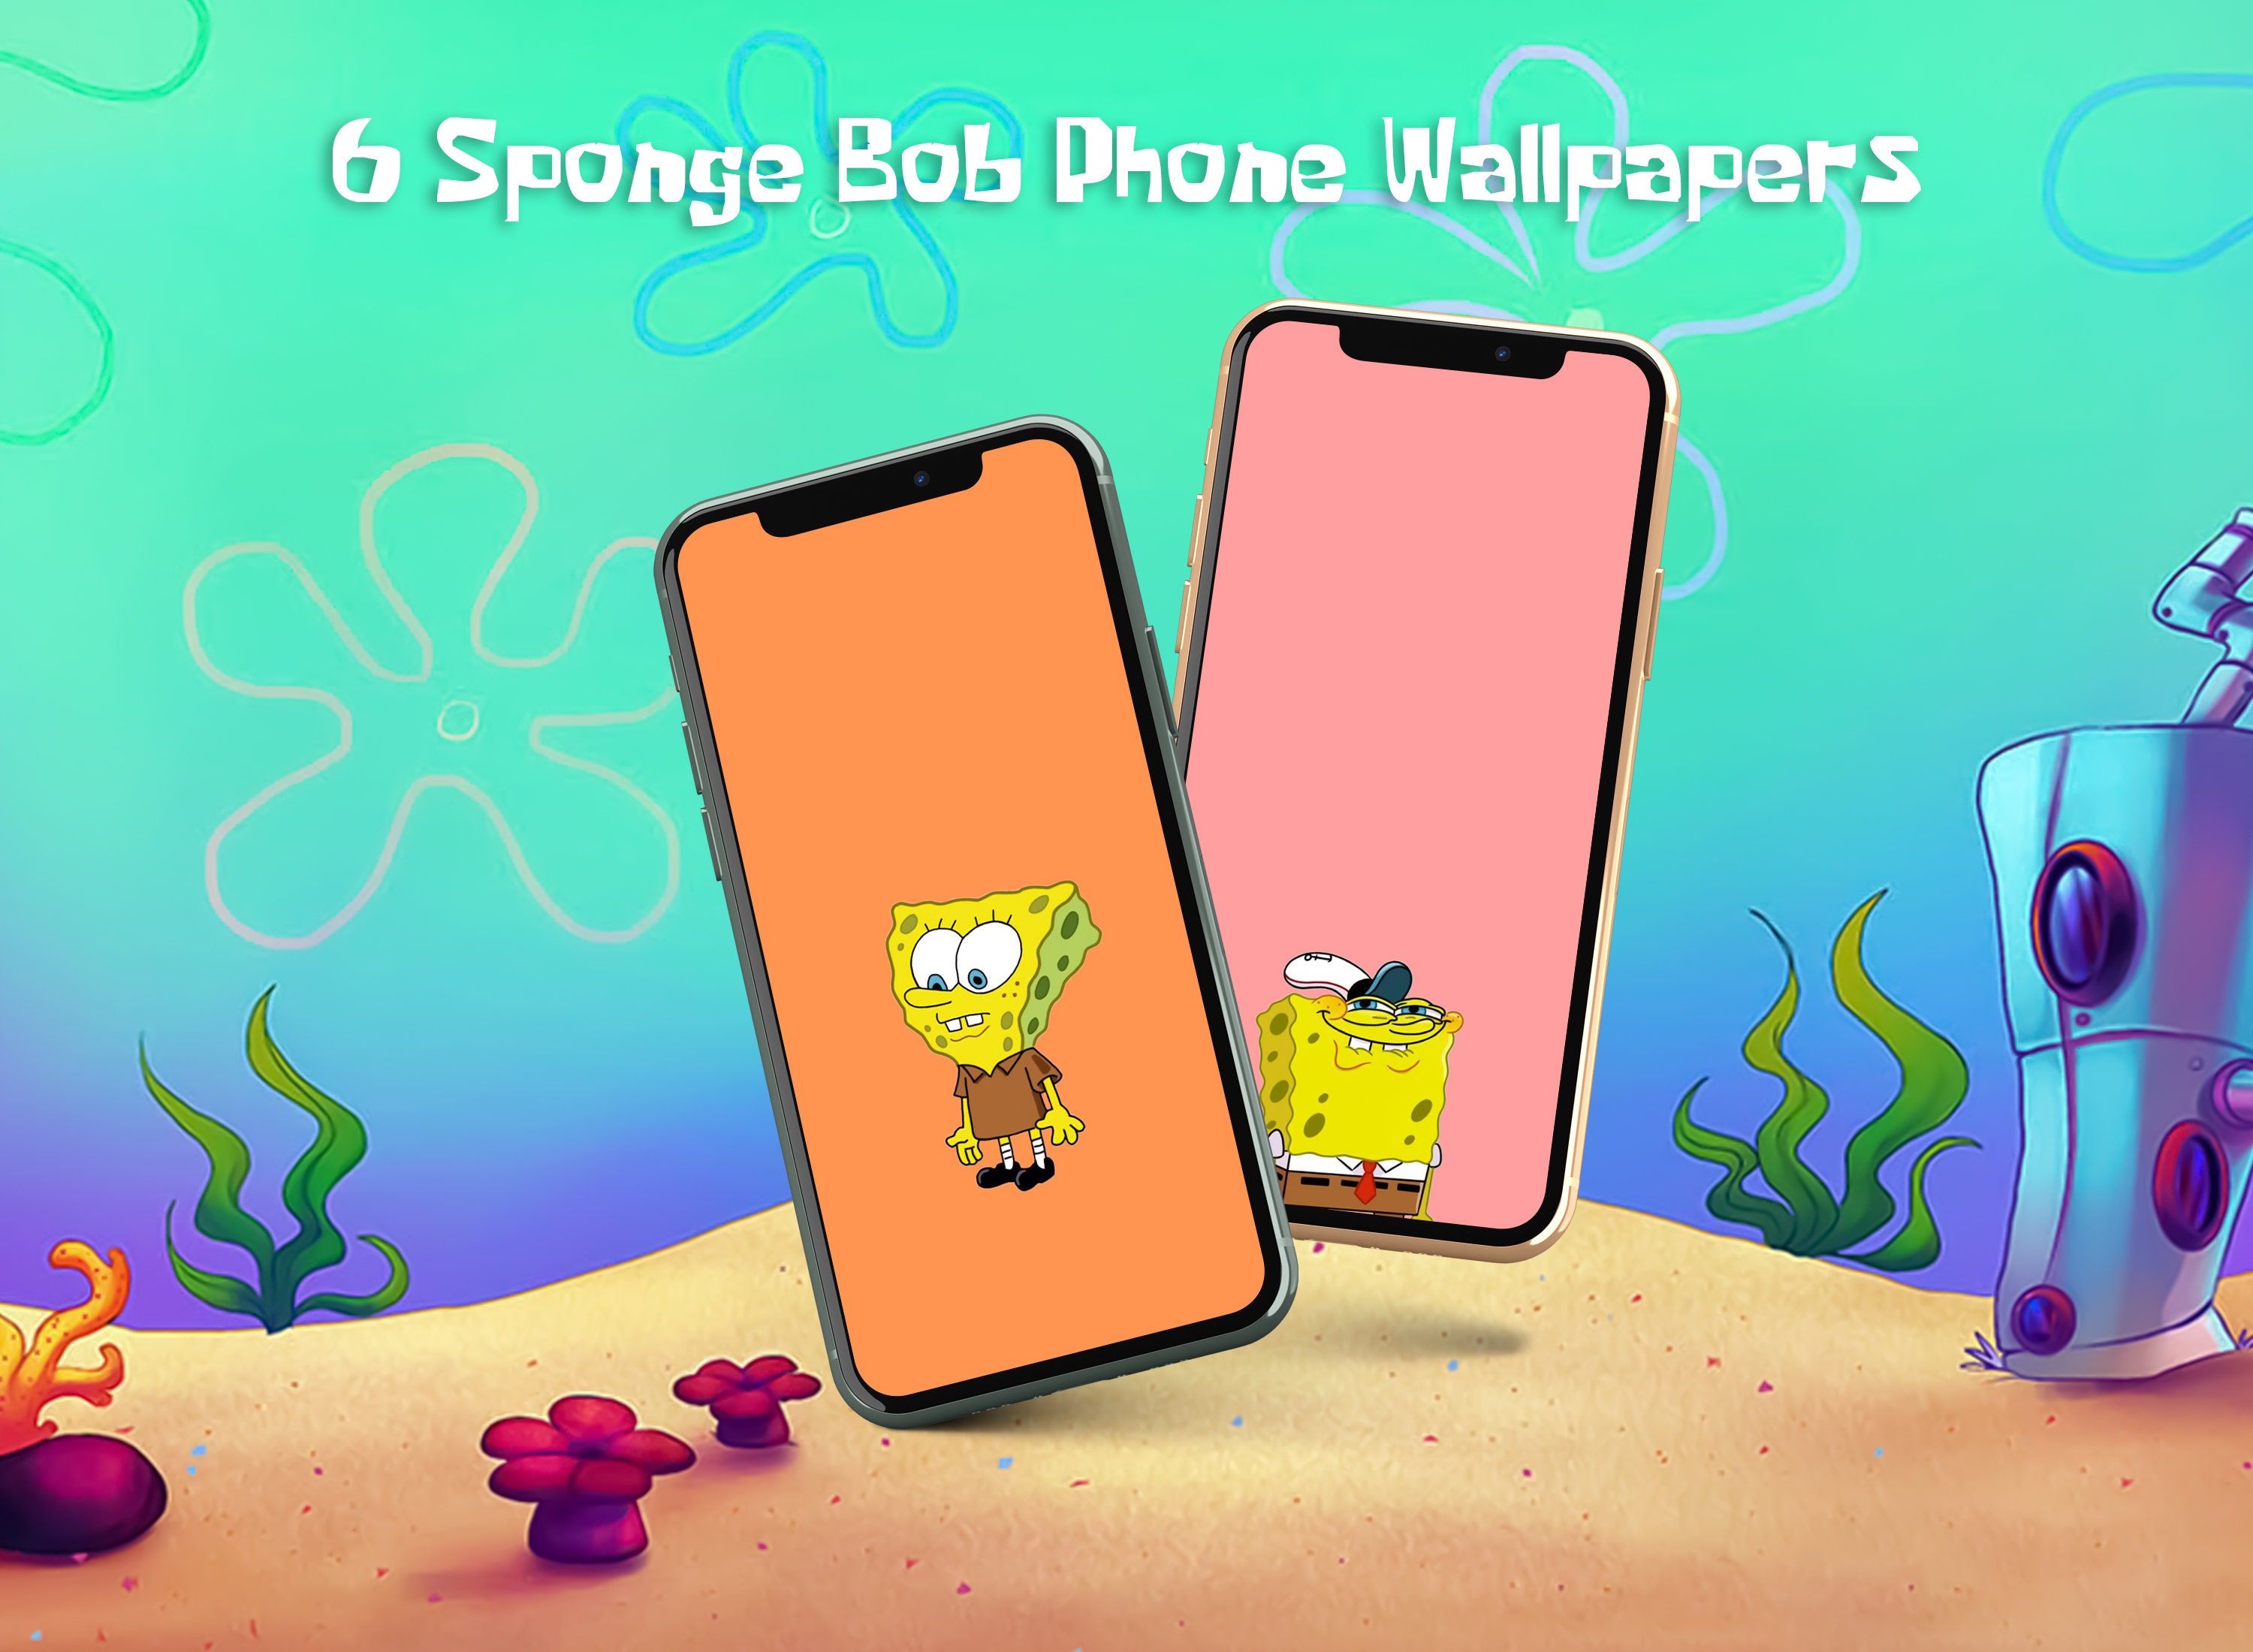 Etsy đang cung cấp 6 hình nền Spongebob dễ thương cho điện thoại của bạn! Hình nền này sẽ khiến bạn cười và đem lại cảm giác vui vẻ cho ngày của bạn. Hãy truy cập đường dẫn này để tải về và trang trí điện thoại của bạn với Spongebob!